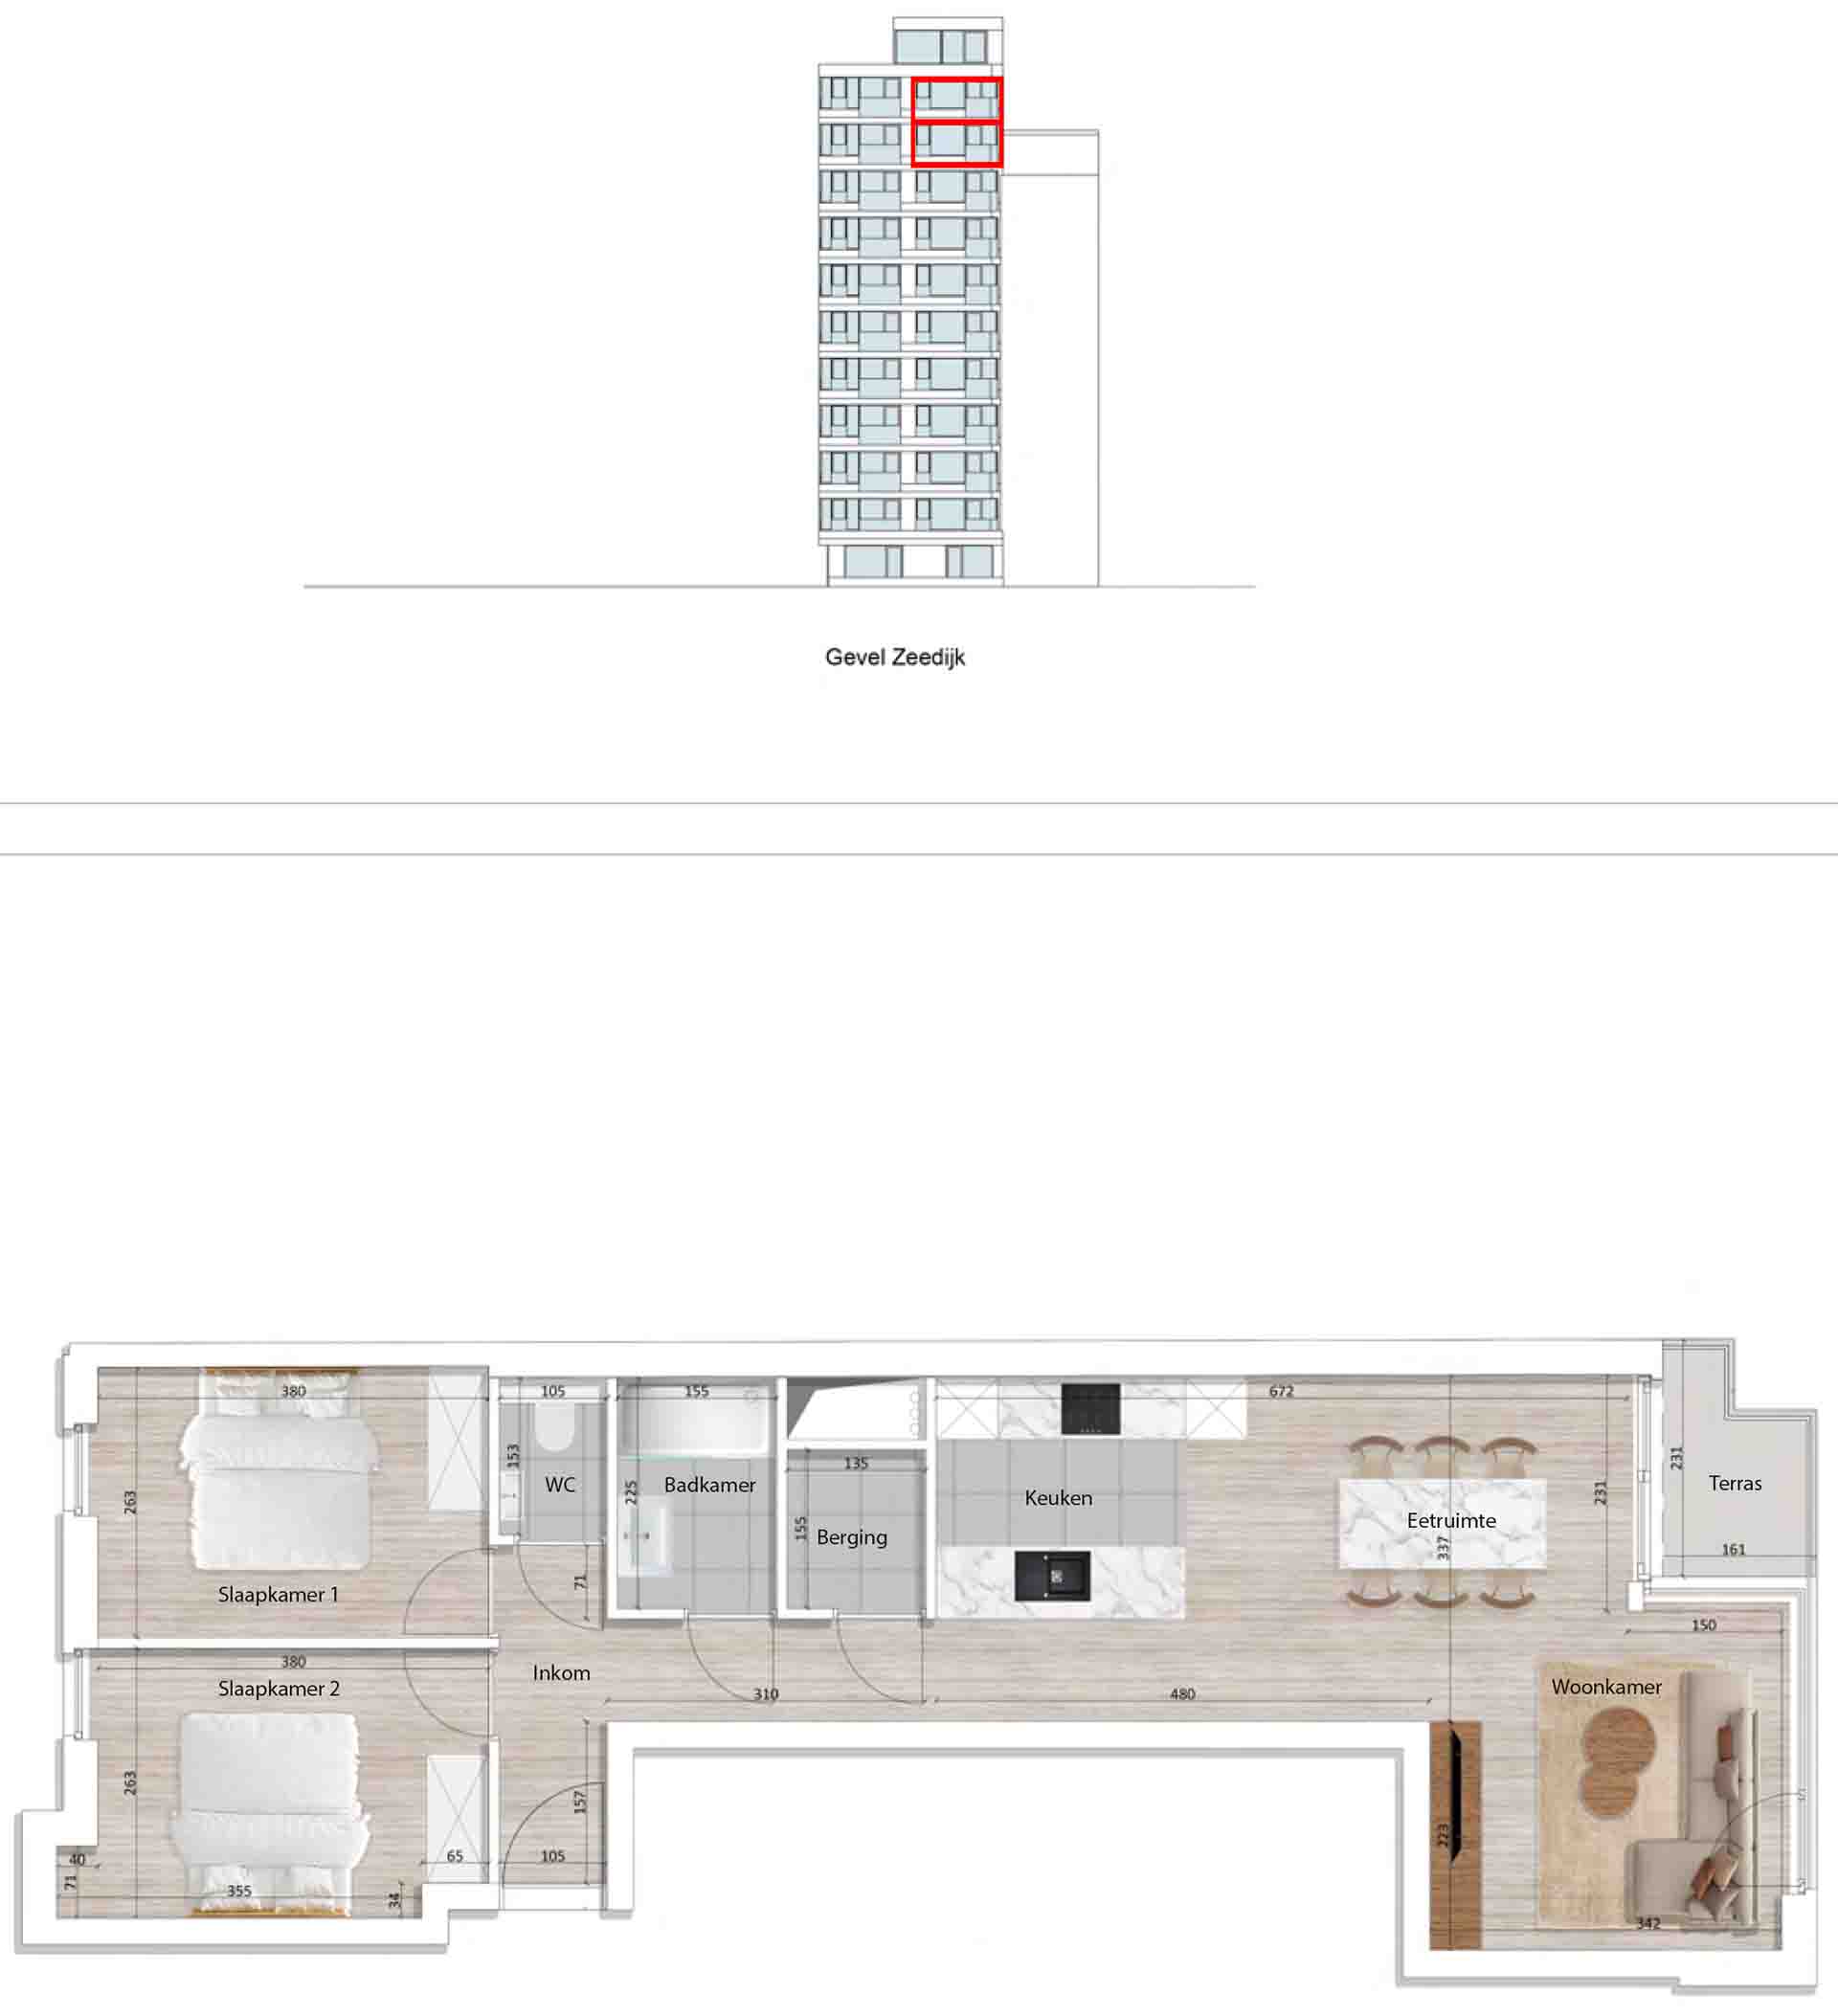 Residentie <br/> Pier - image appartement-te-koop-blankenberge-residentie-pier-plan-0902-1002 on https://hoprom.be